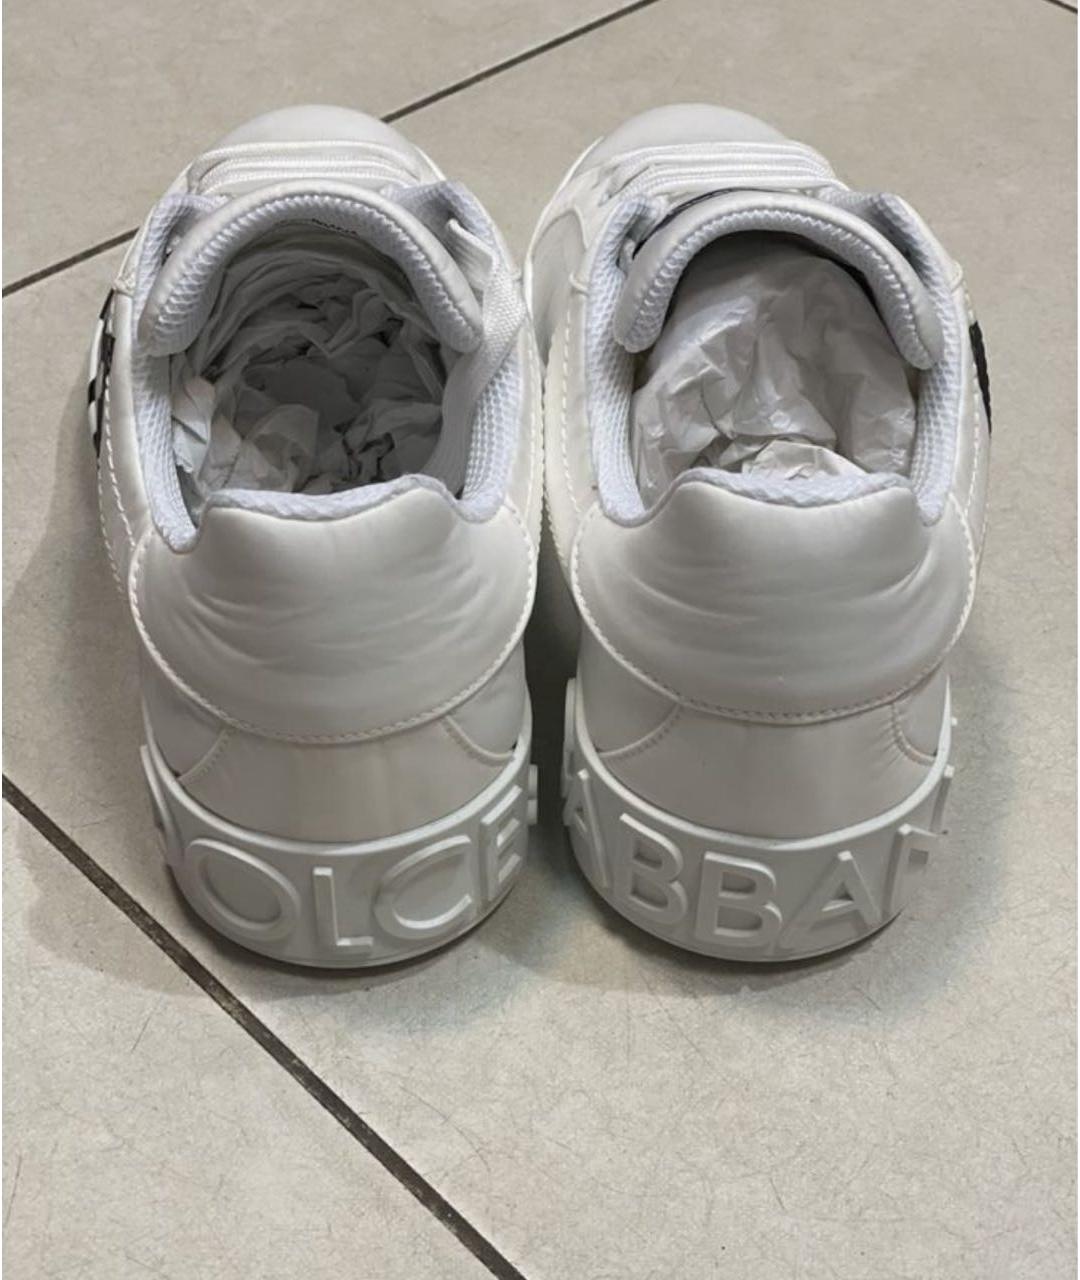 DOLCE&GABBANA Белые низкие кроссовки / кеды, фото 3